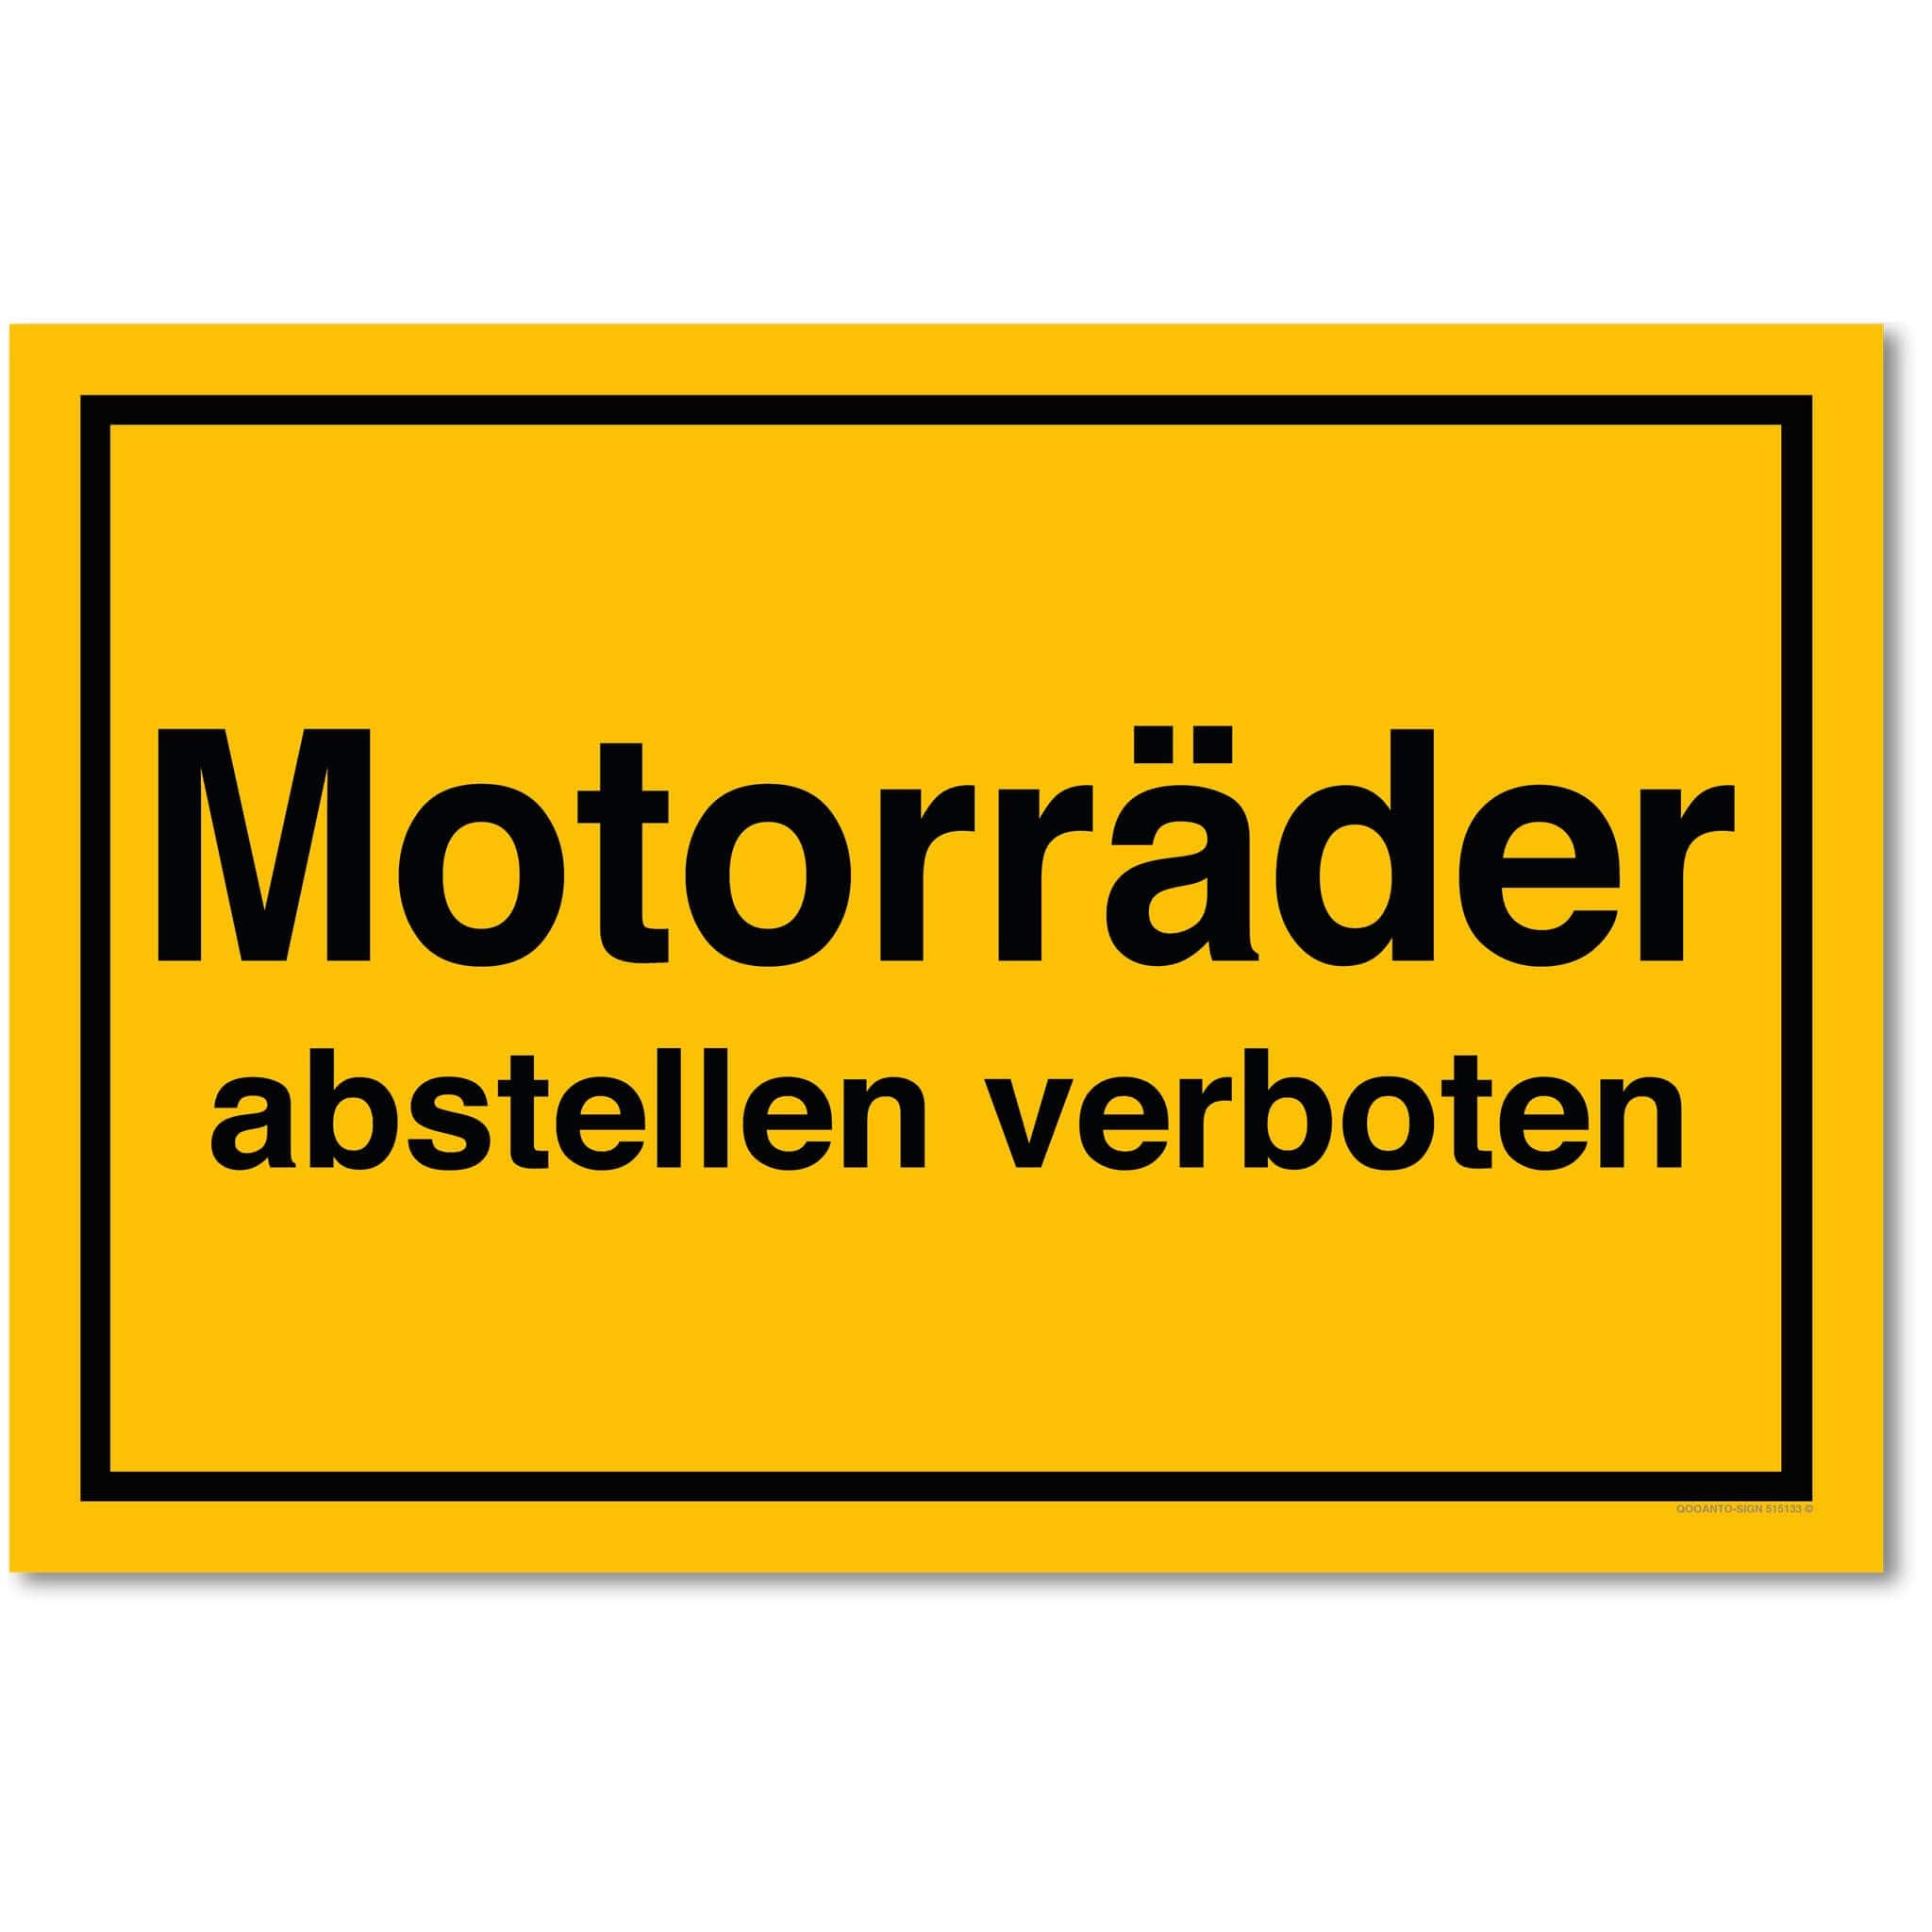 Motorräder abstellen verboten, gelb, Schild